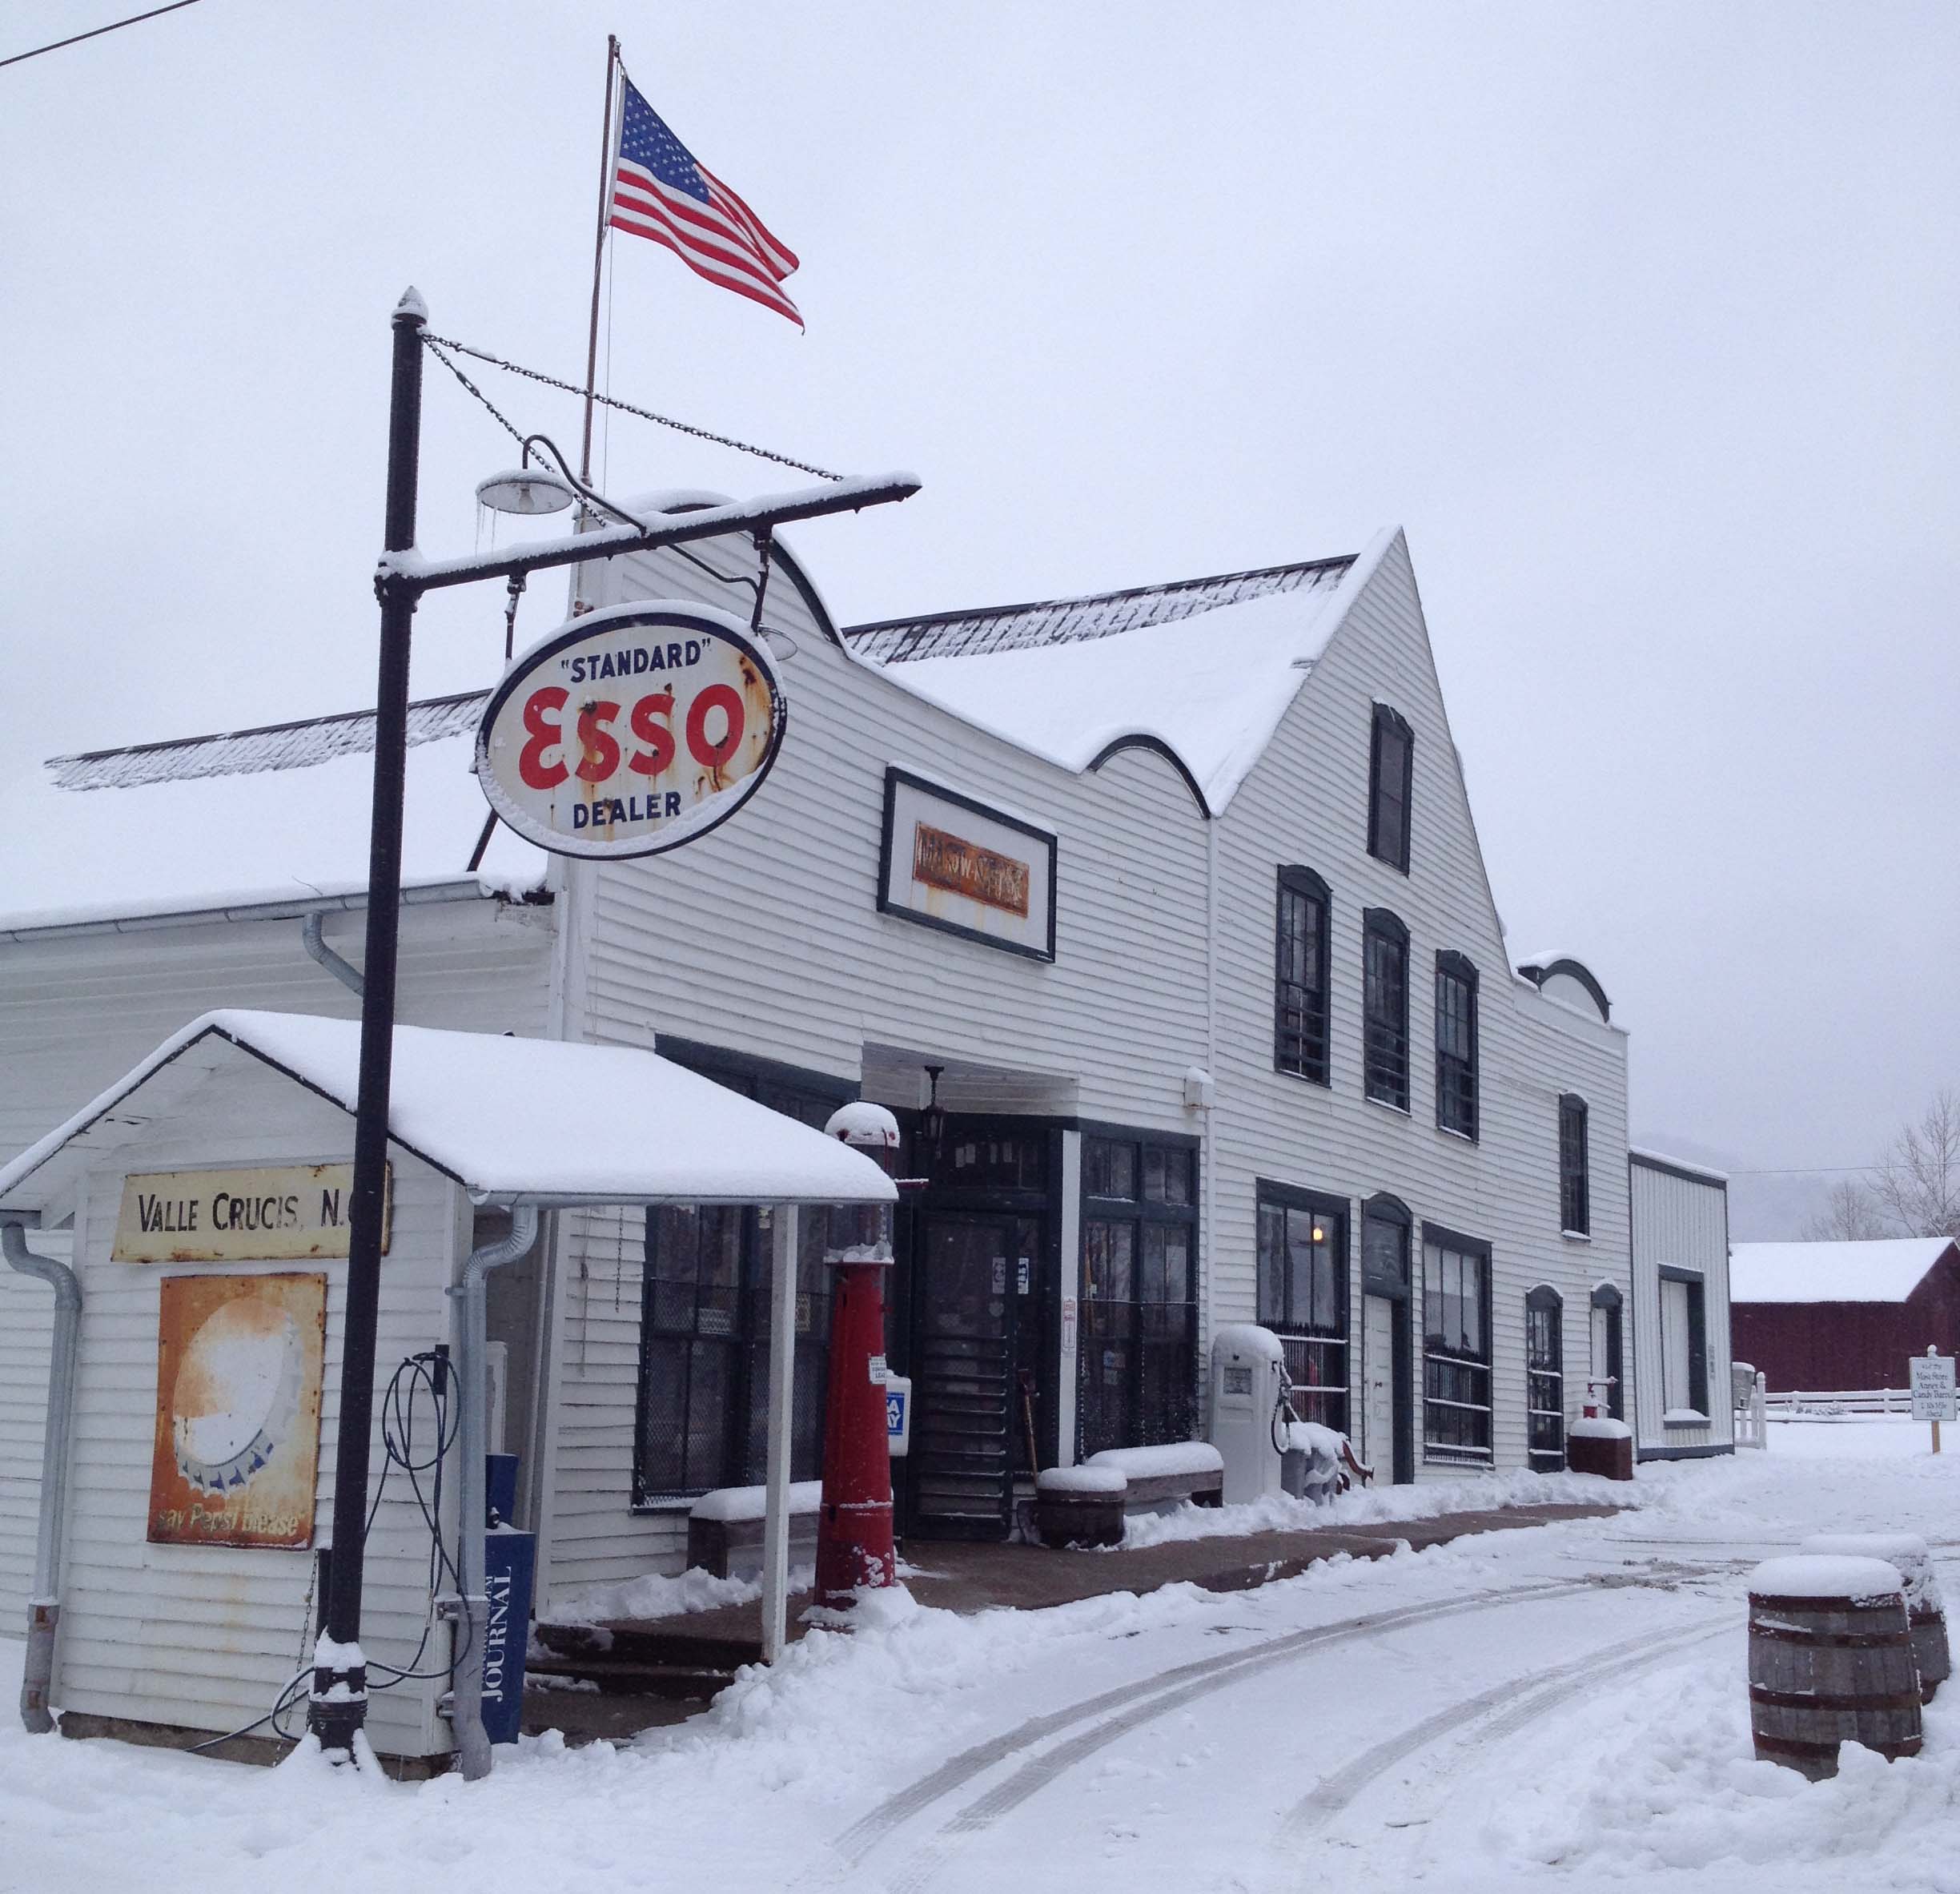 Original Store in Snow